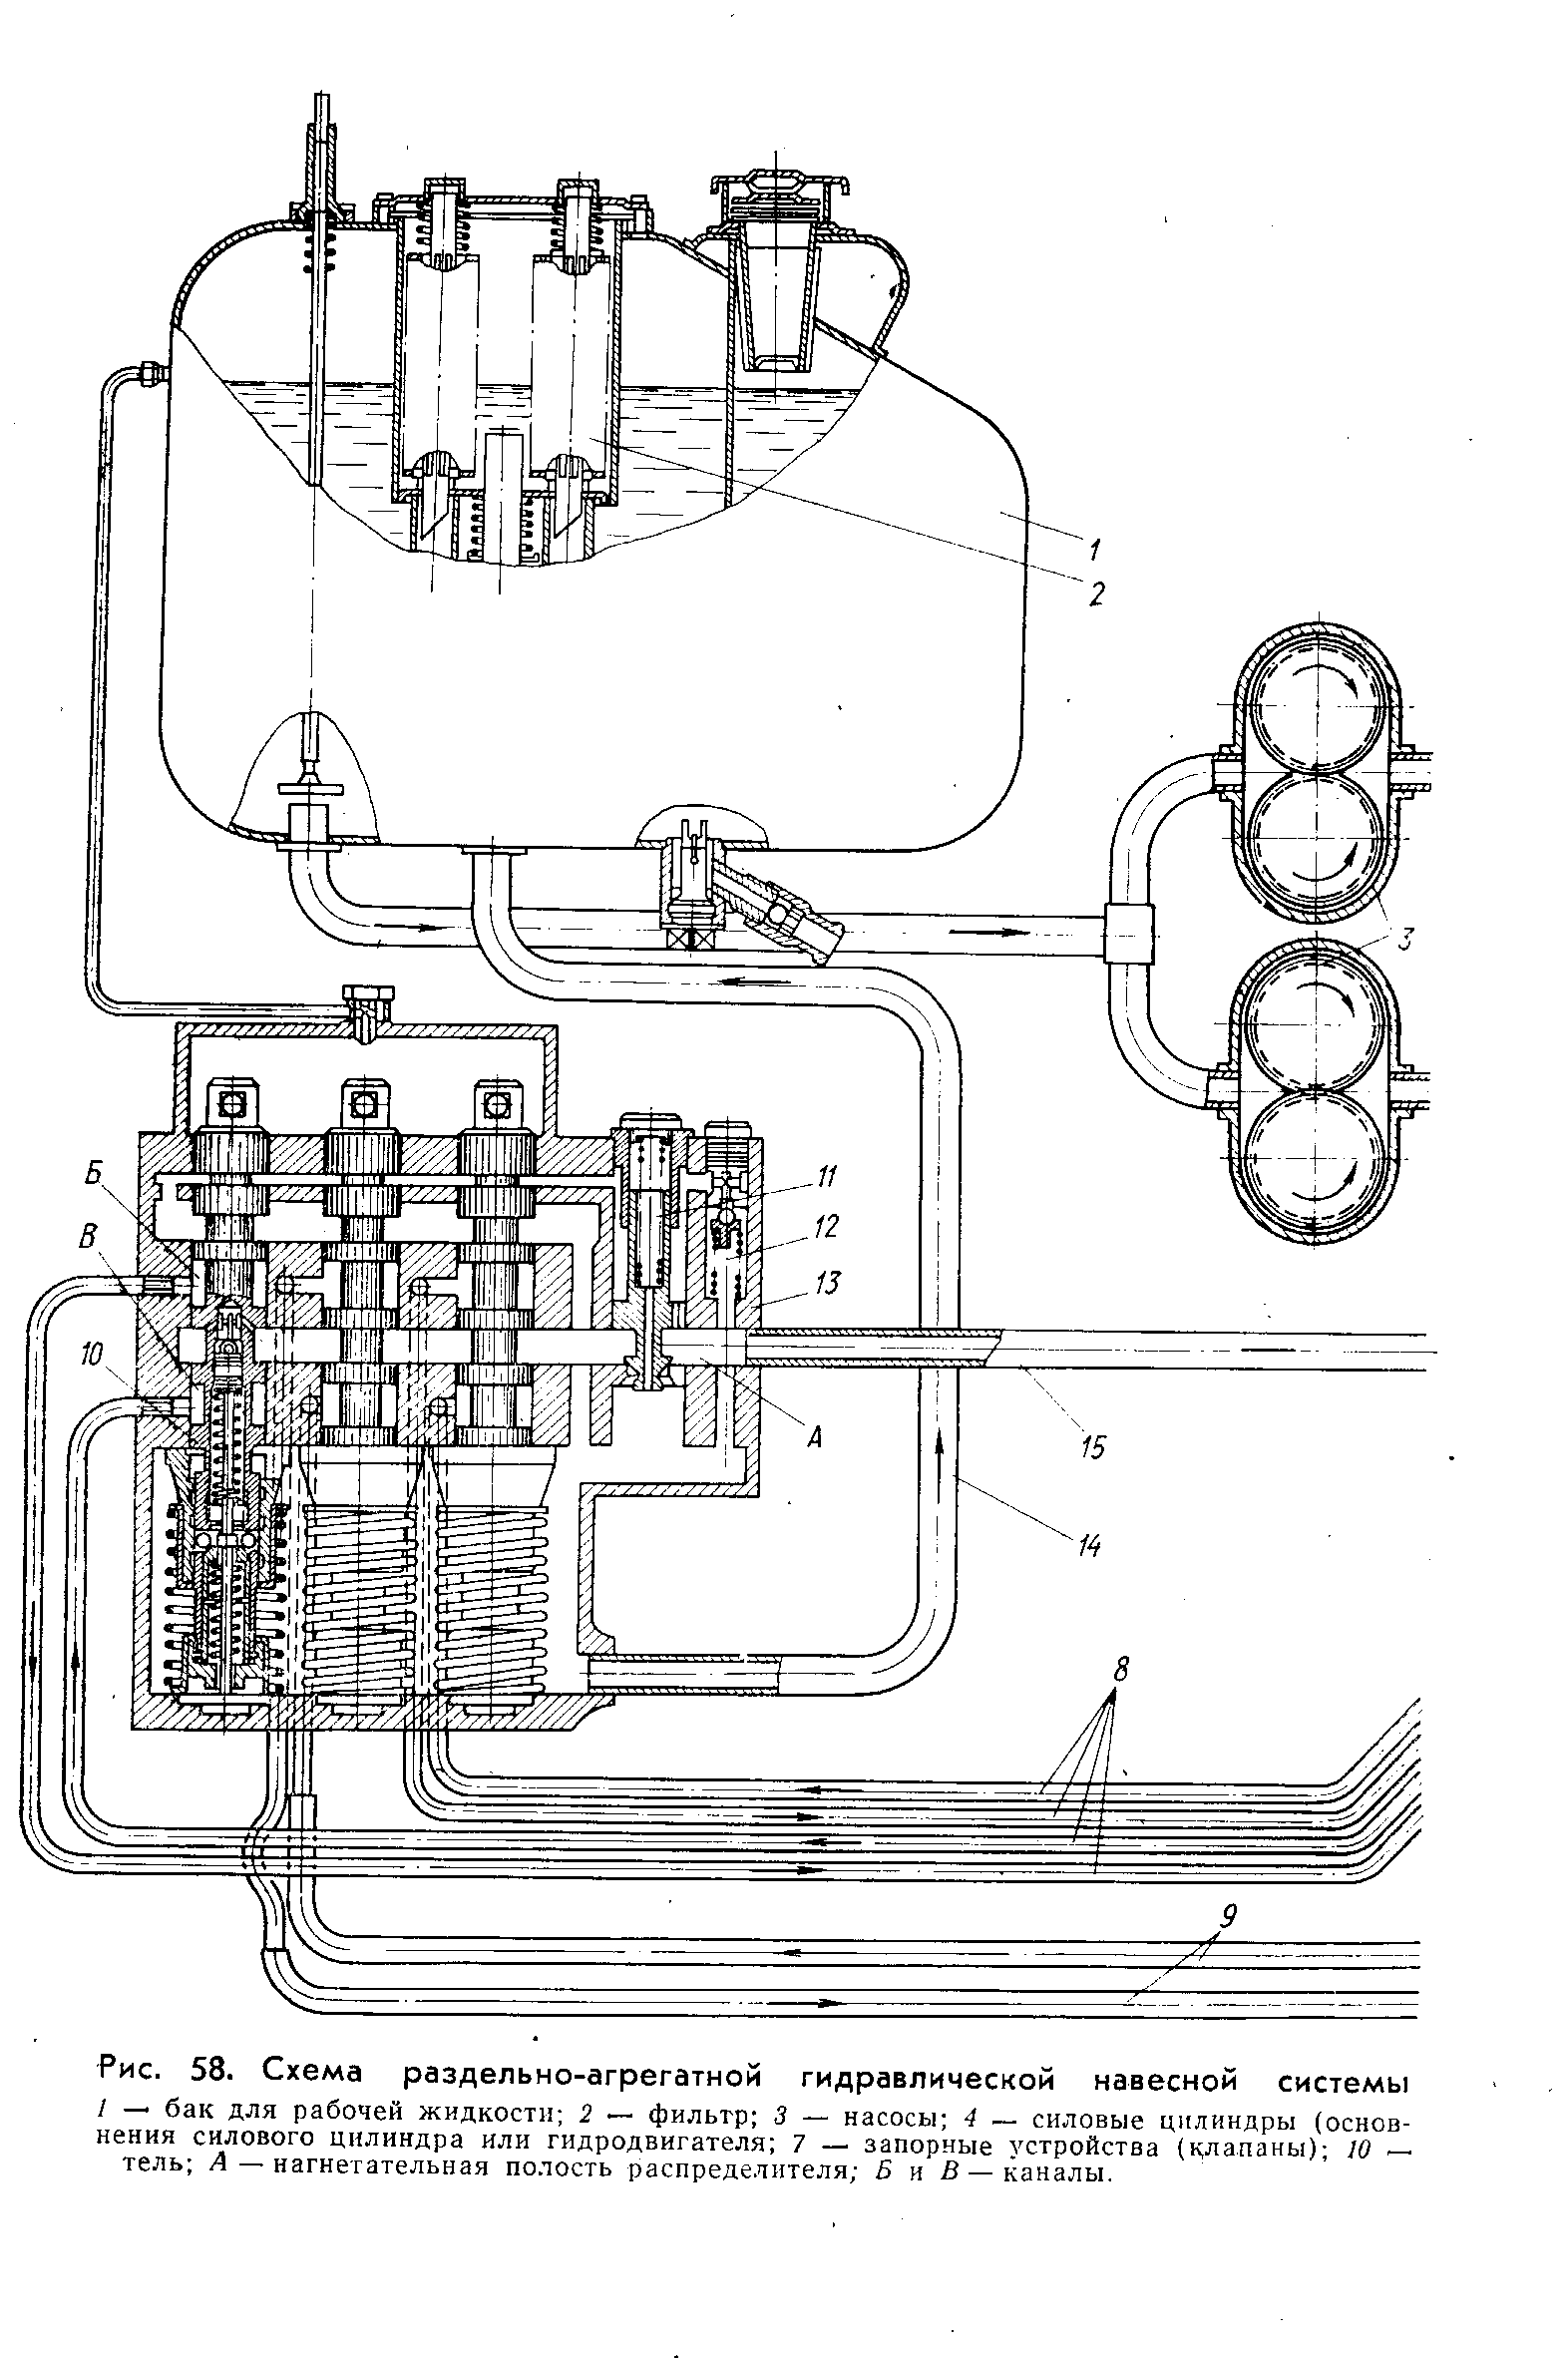 Рис. 58. Схема раздельно-агрегатной гидравлической навесной системы
